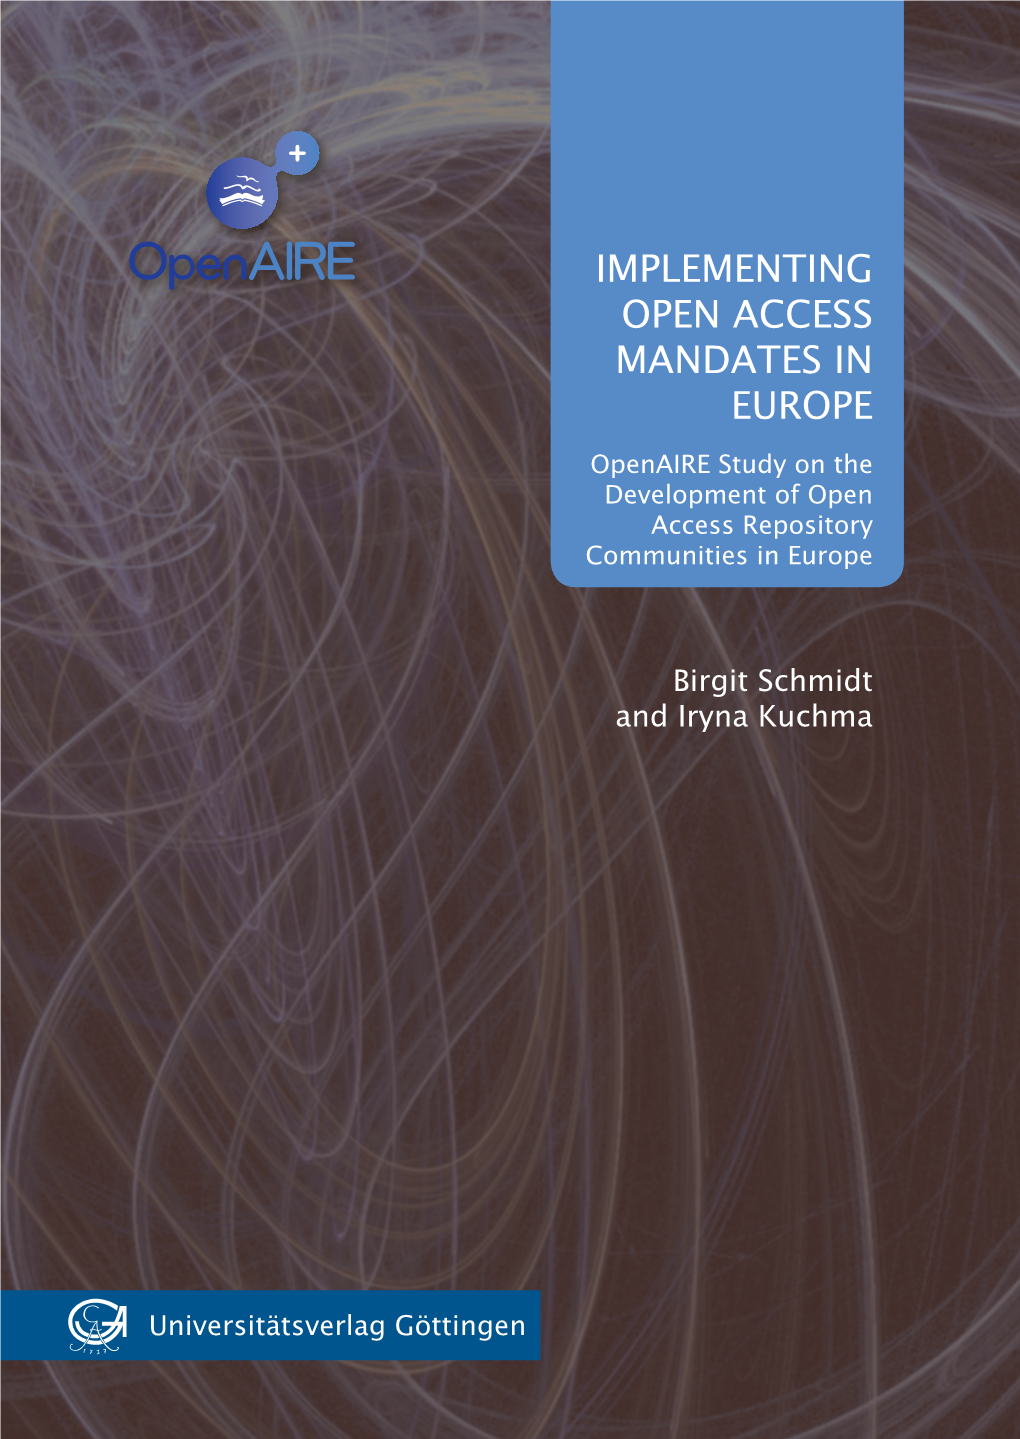 Implementing Open Access Mandates in Europe in Mandates Access Open Implementing Kuchma Iryna and Schmidt Birgit